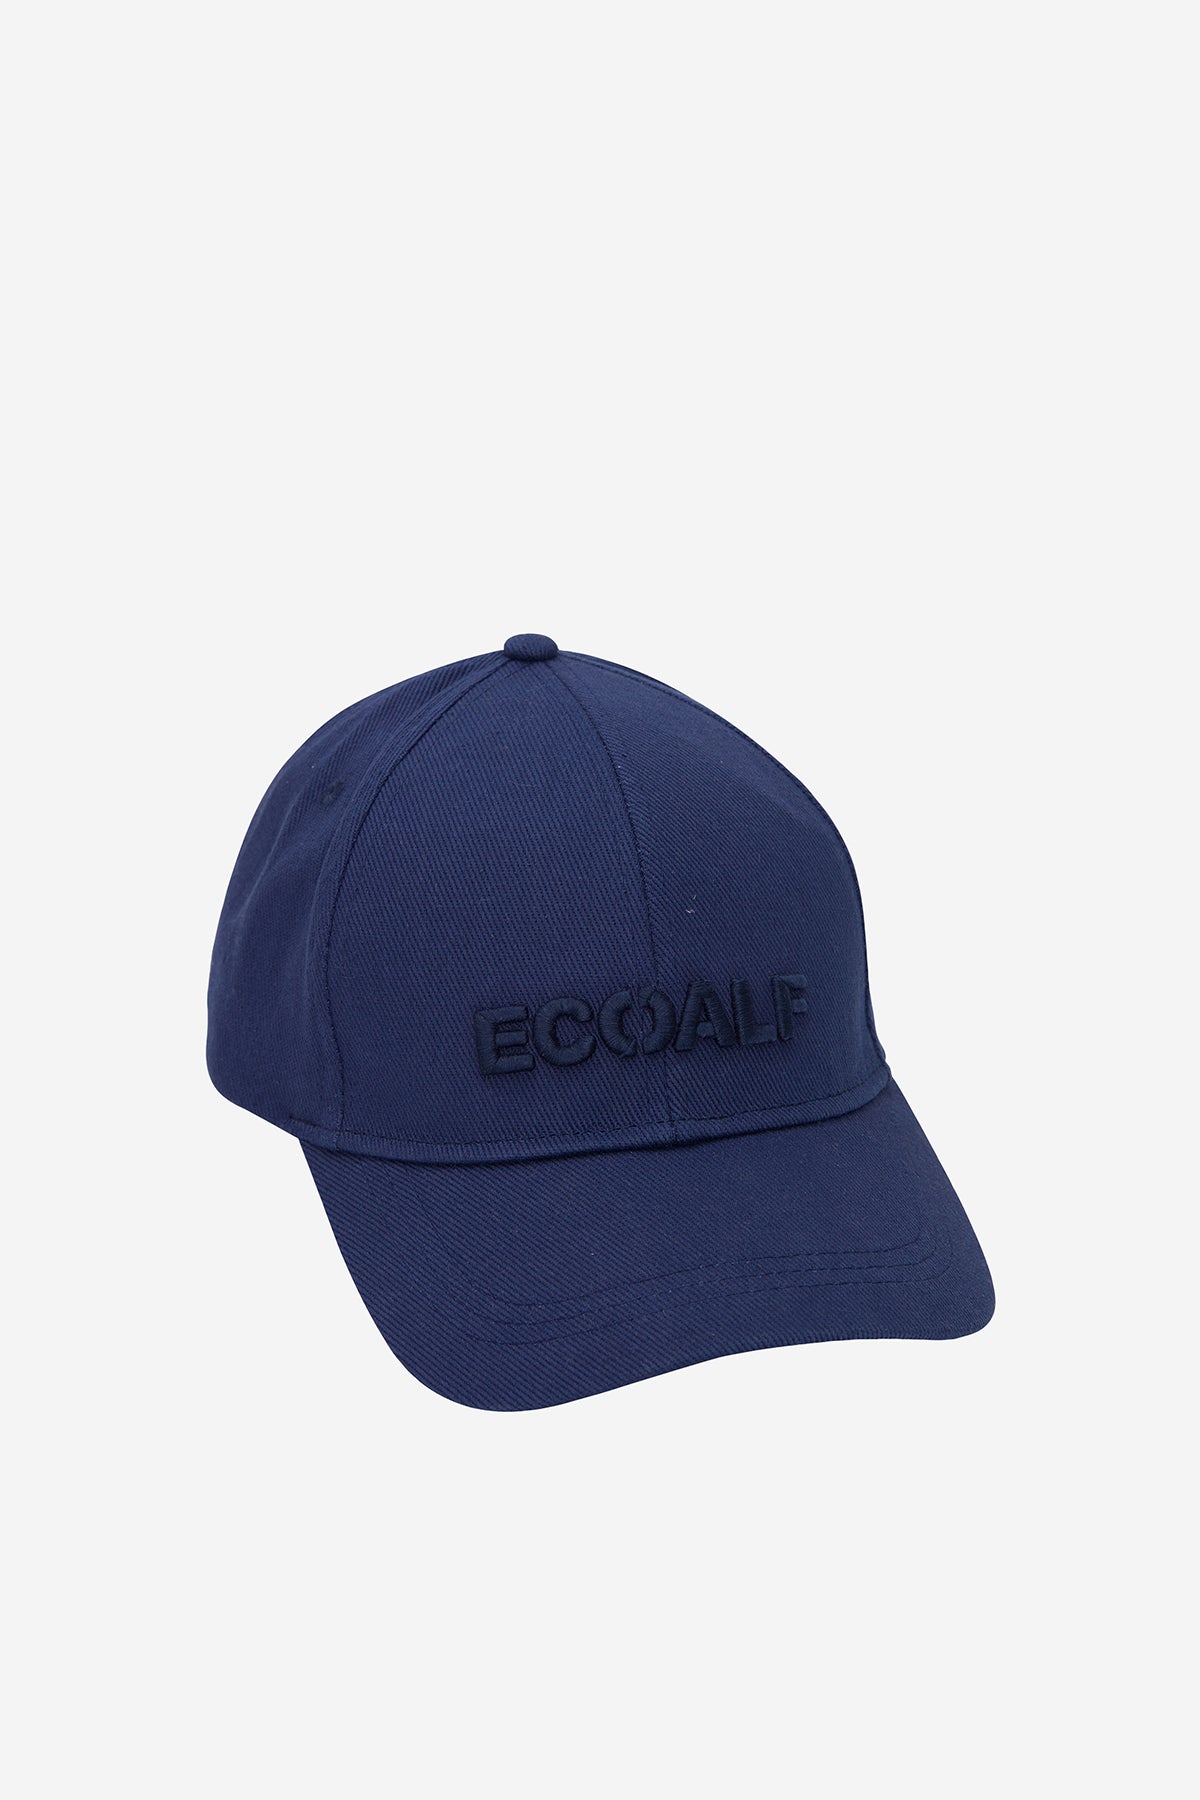 BICOLOR CAP BLUE